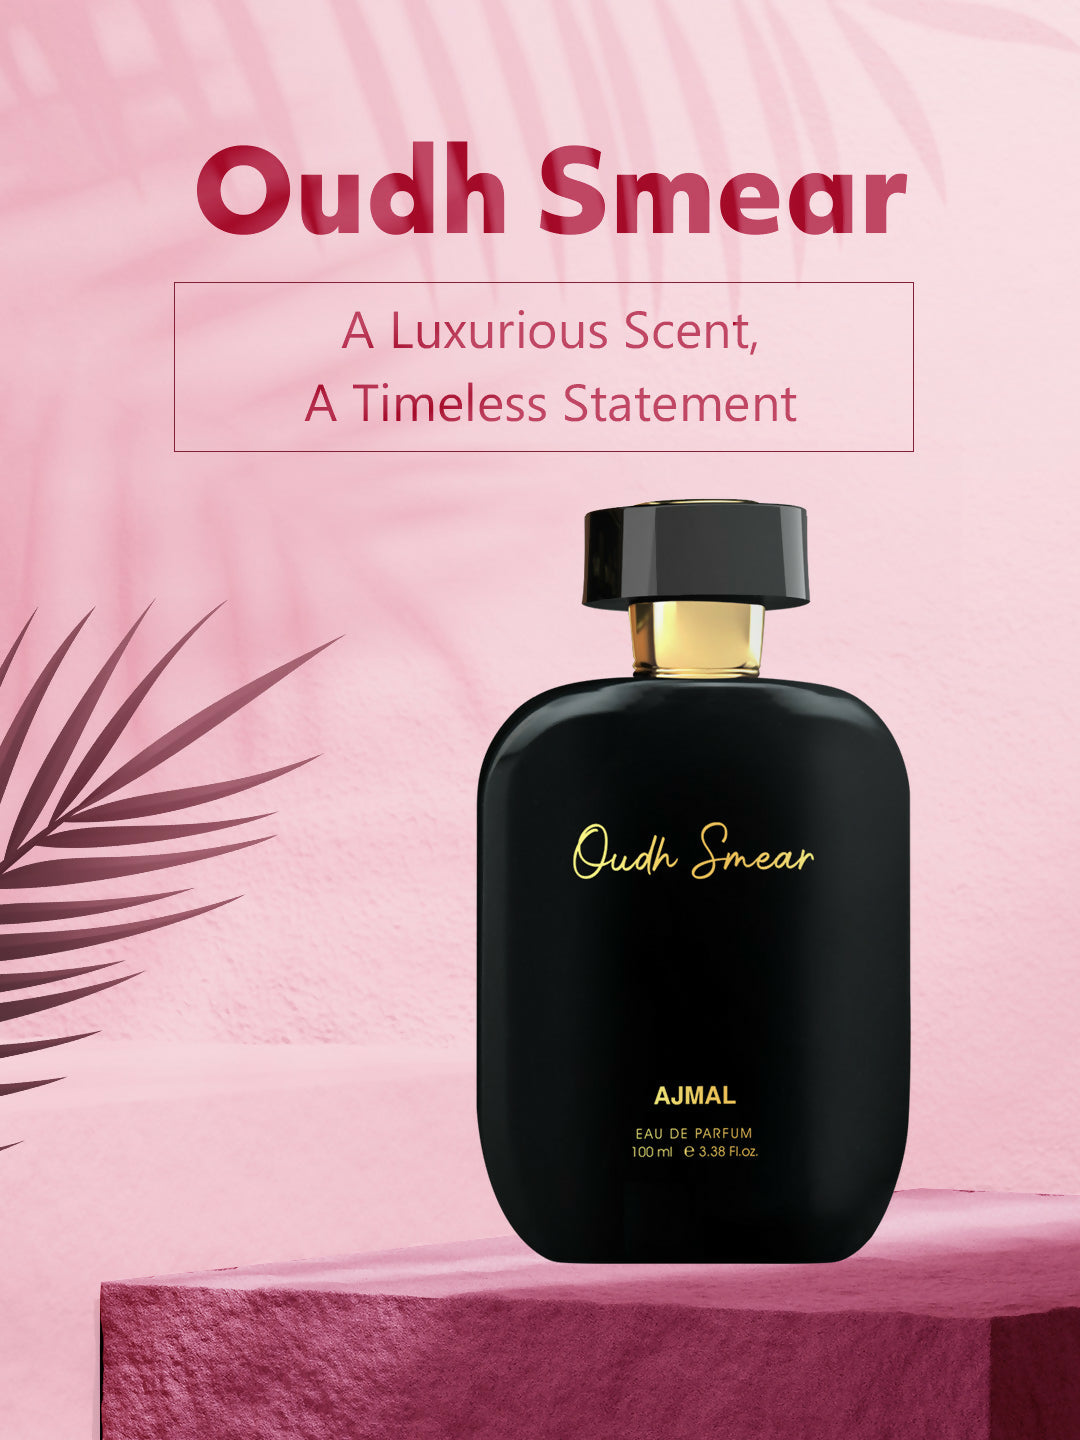 Ajmal ARTISAN - OUDH SMEAR Long lasting Fragrance, Handpicked Luxury Perfume for Men 100ml.